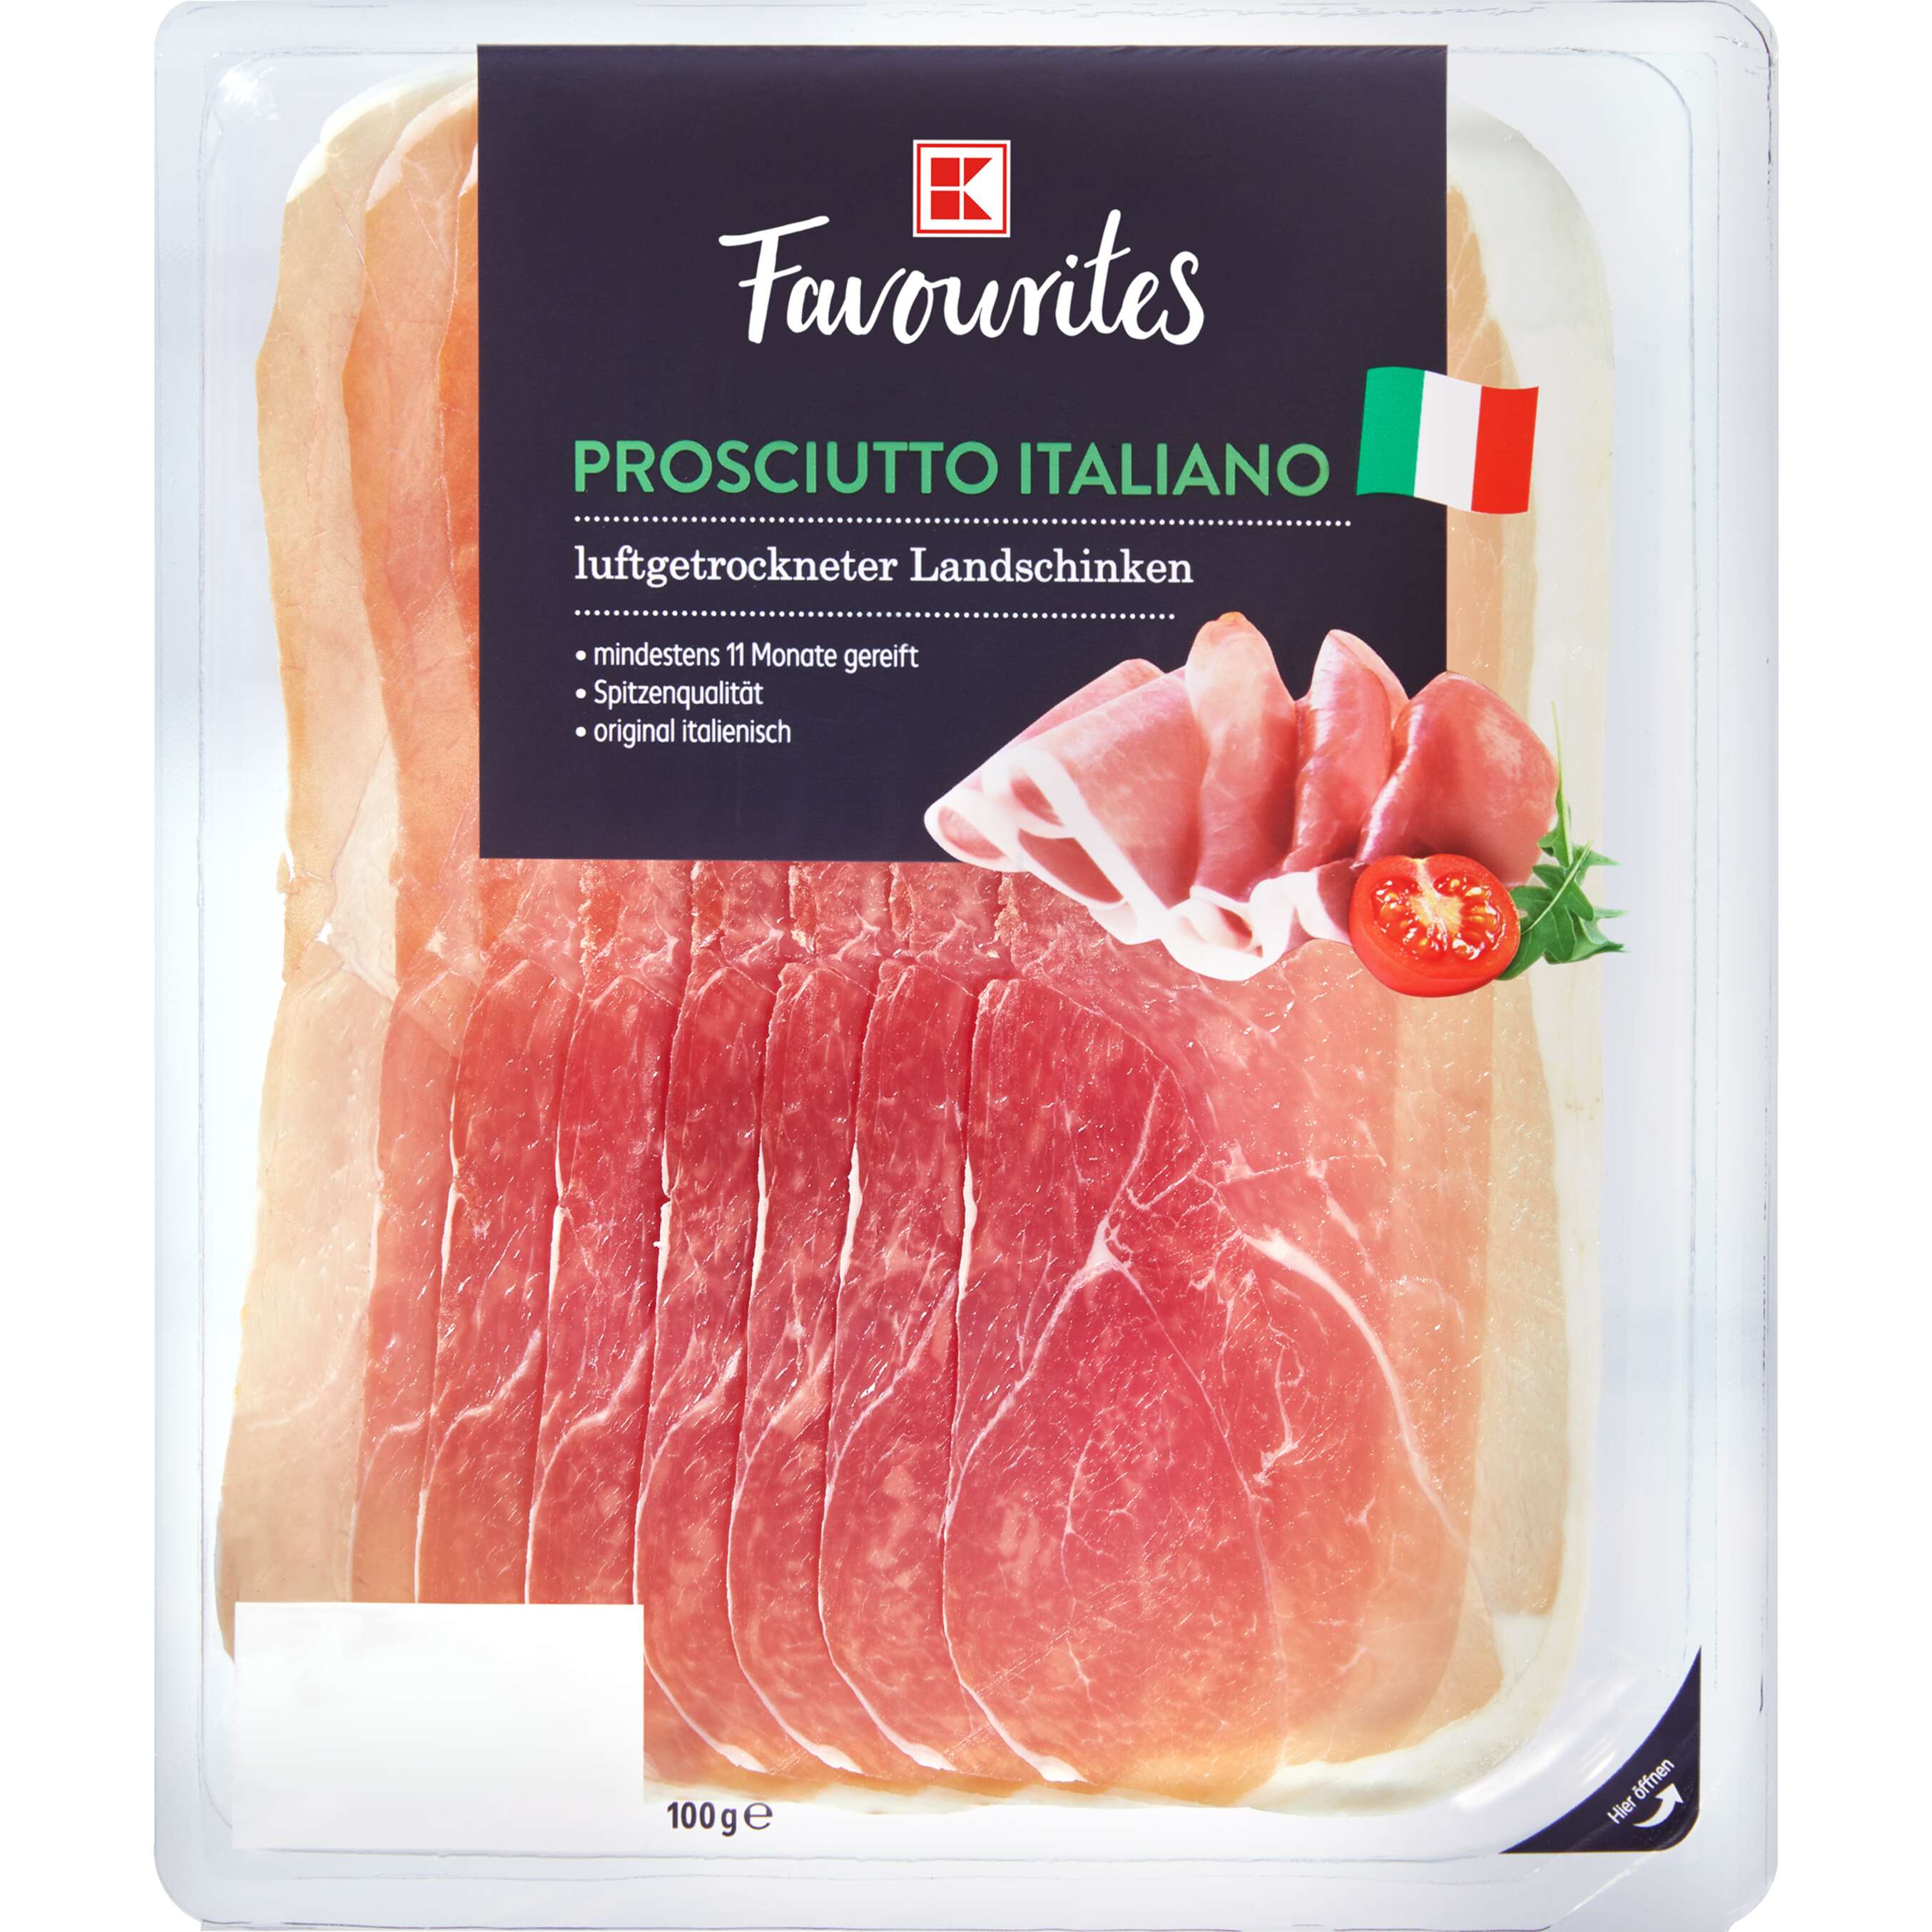 Zobrazit nabídku K-Favourites Proscuitto Italiano šunka sušená na vzduchu